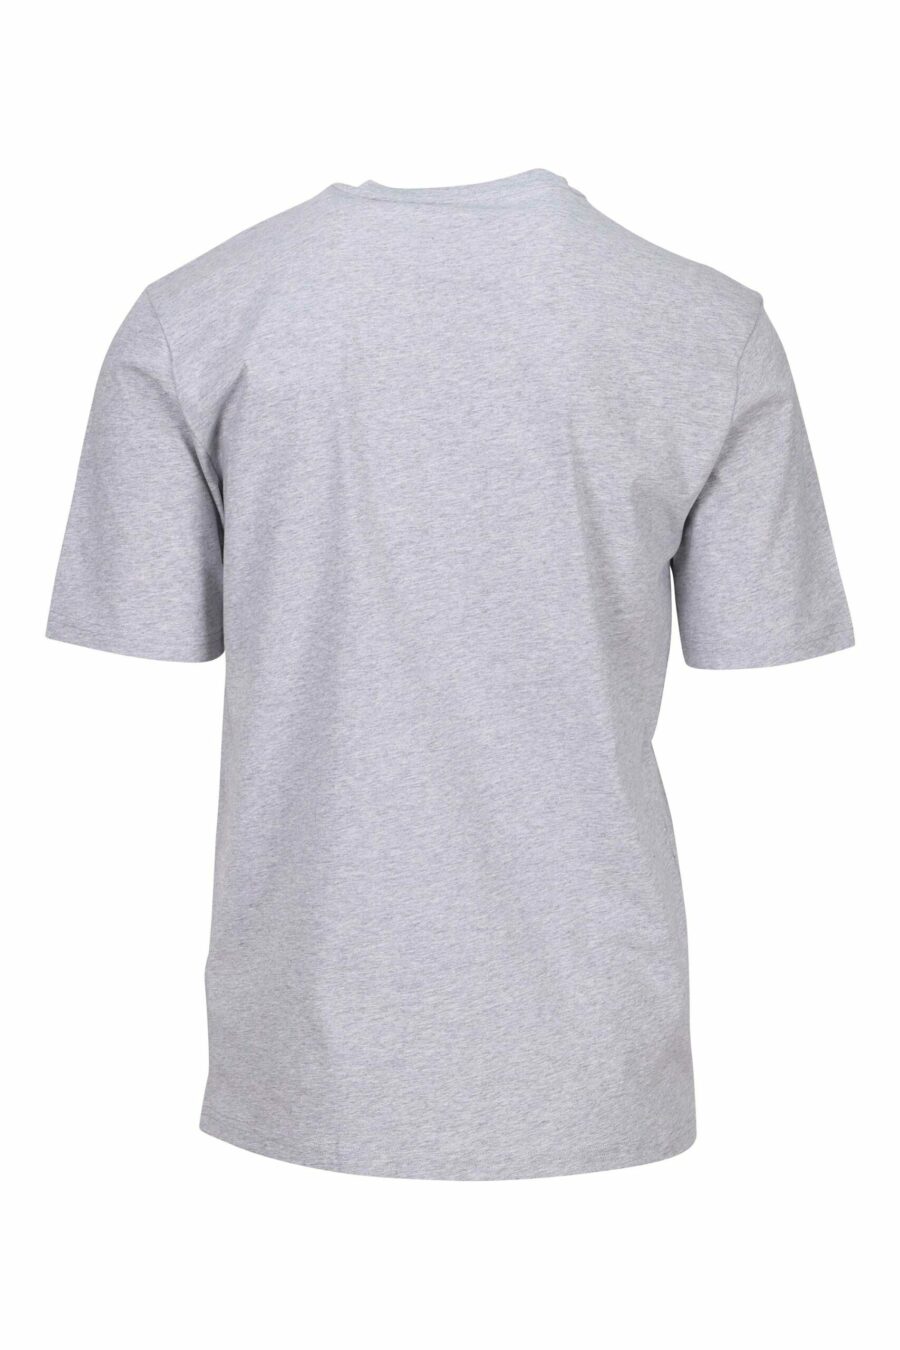 Graues T-Shirt mit Mini-Logo-Zeichnung eines Bären - 667113767741 1 skaliert